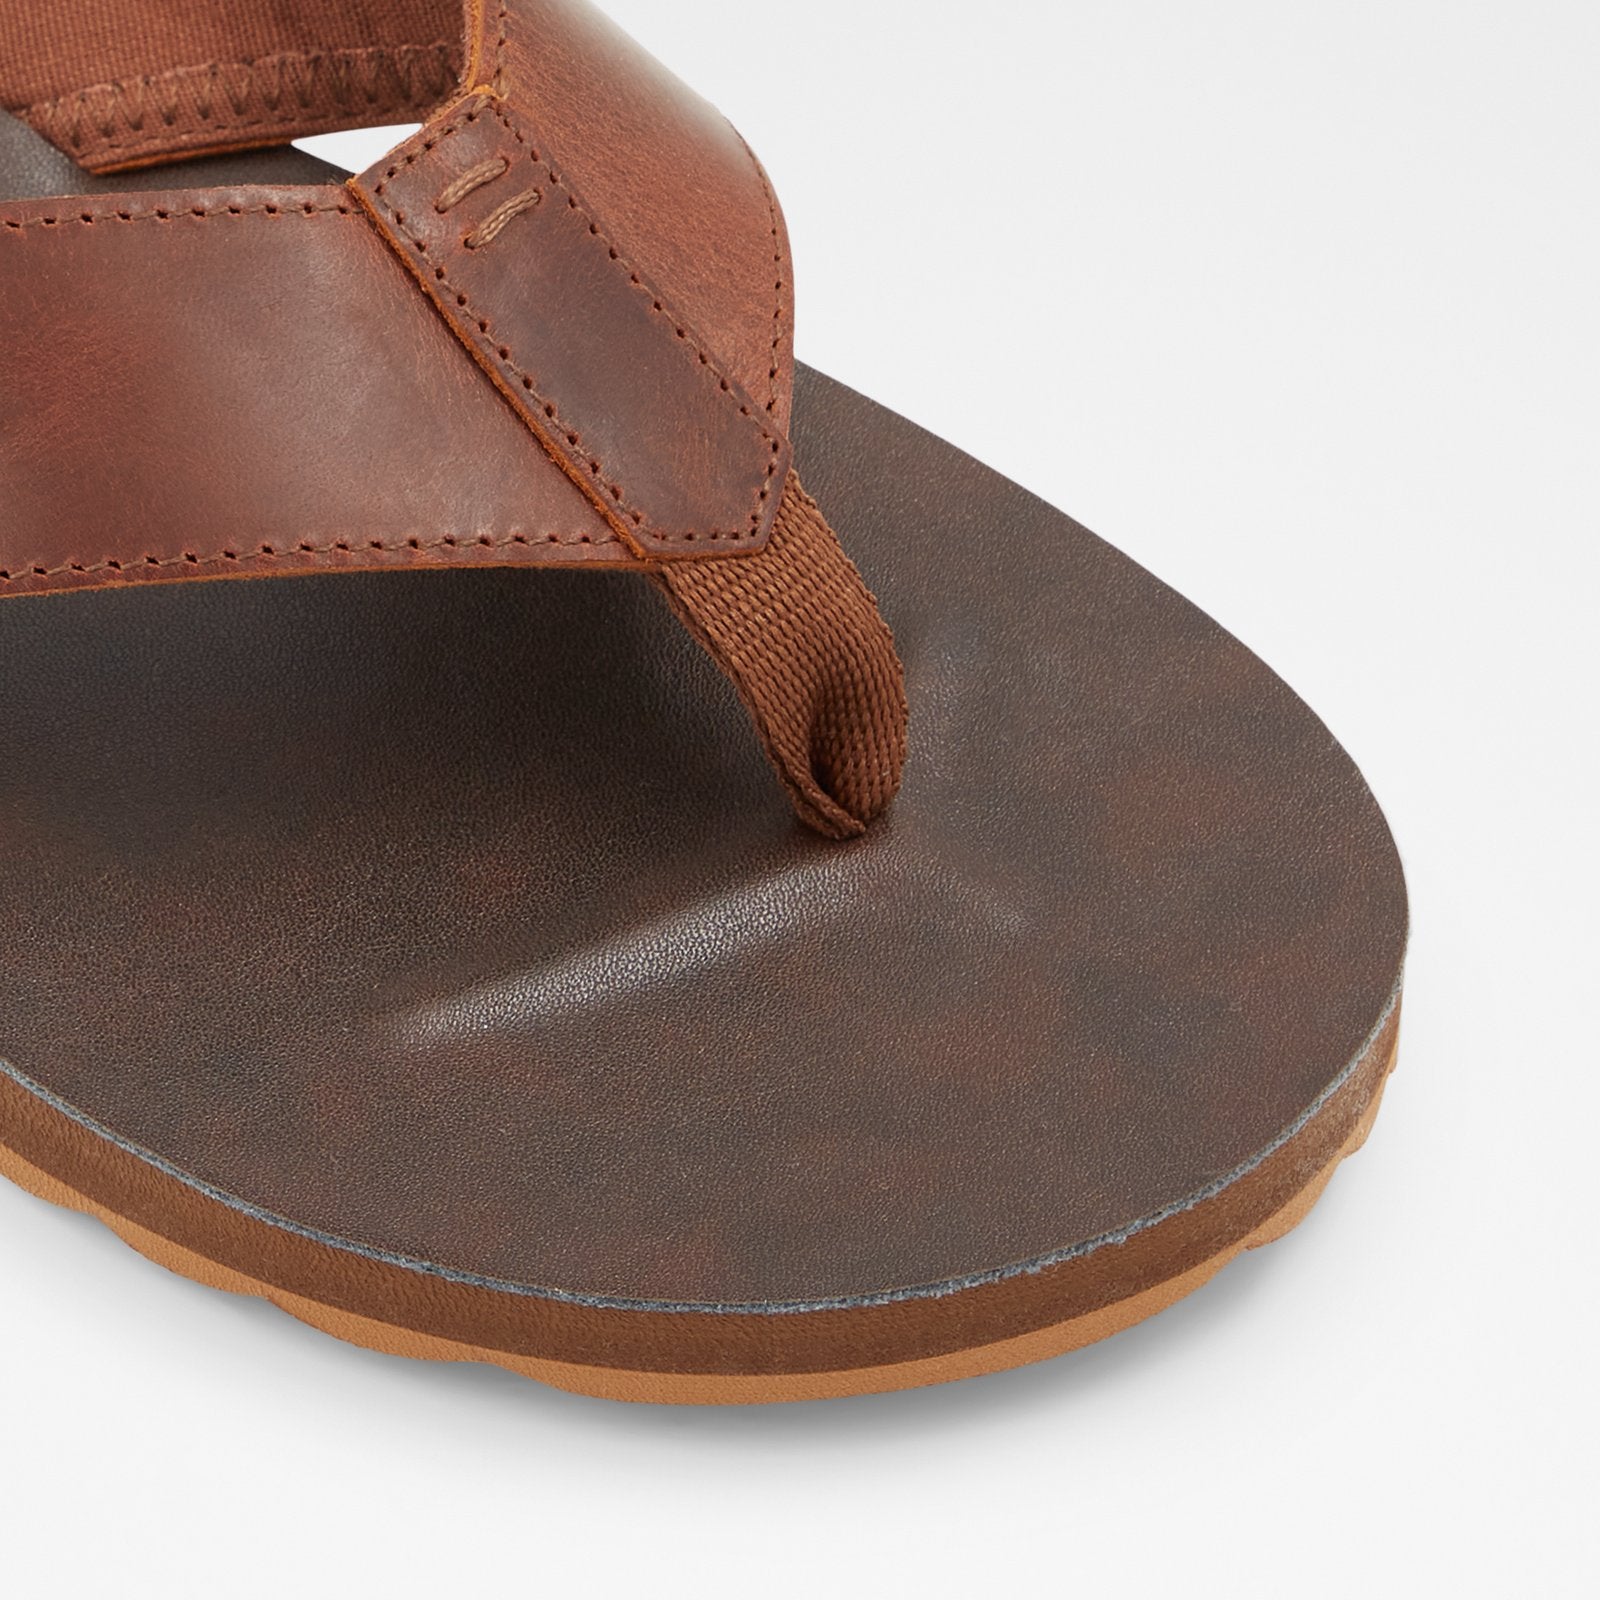 Kievit Men Shoes - Brown - ALDO KSA